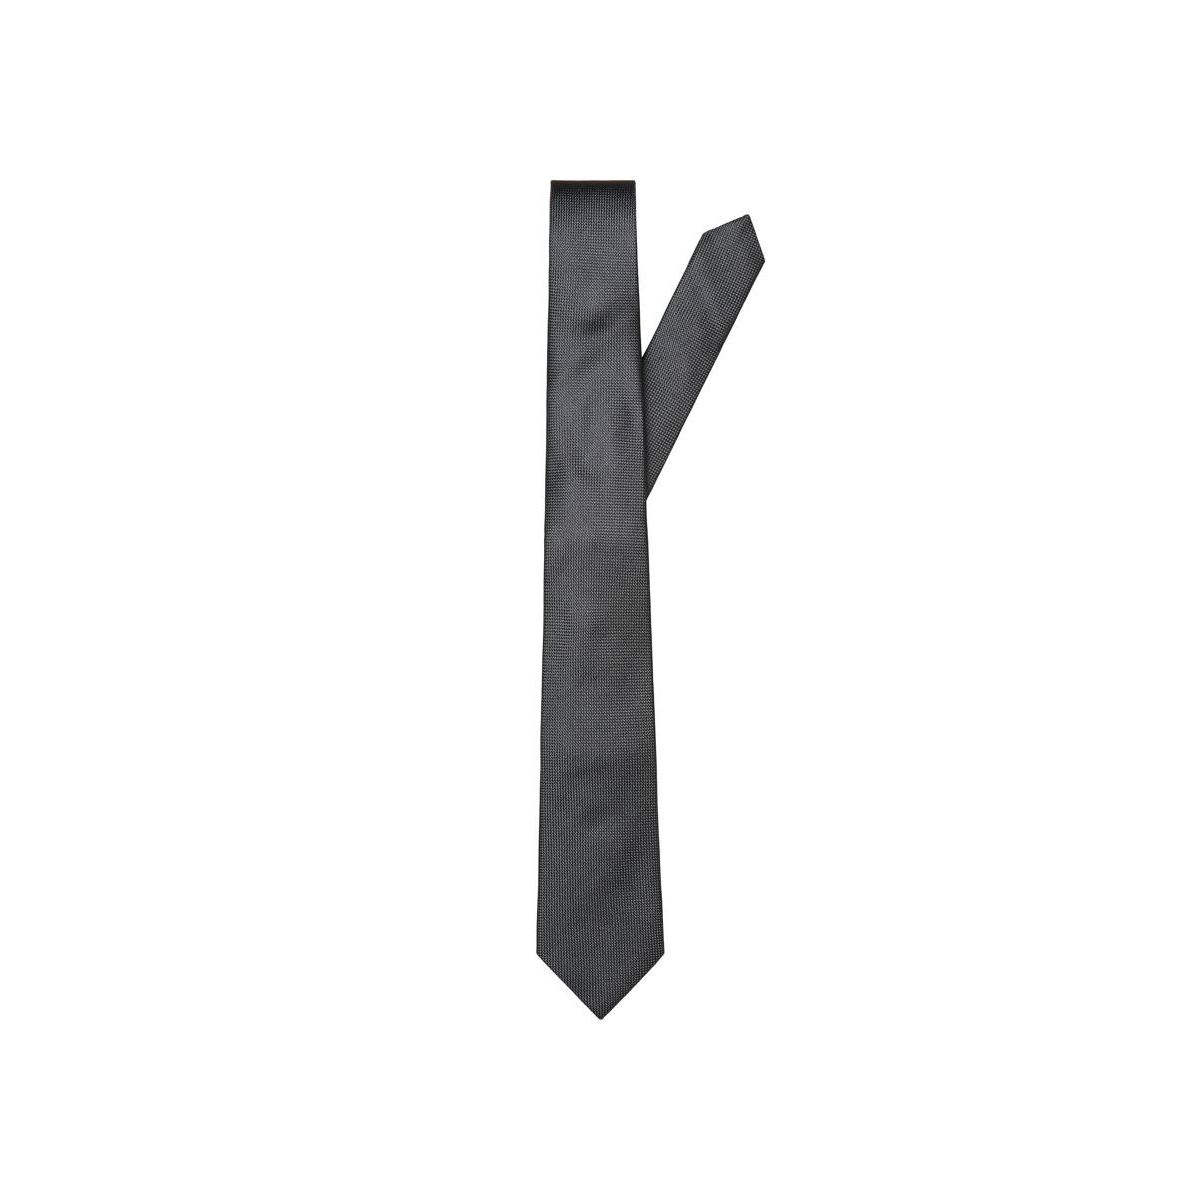 La Redoute Homme Accessoires Cravates & Pochettes Nœuds papillons Cravate en soie 